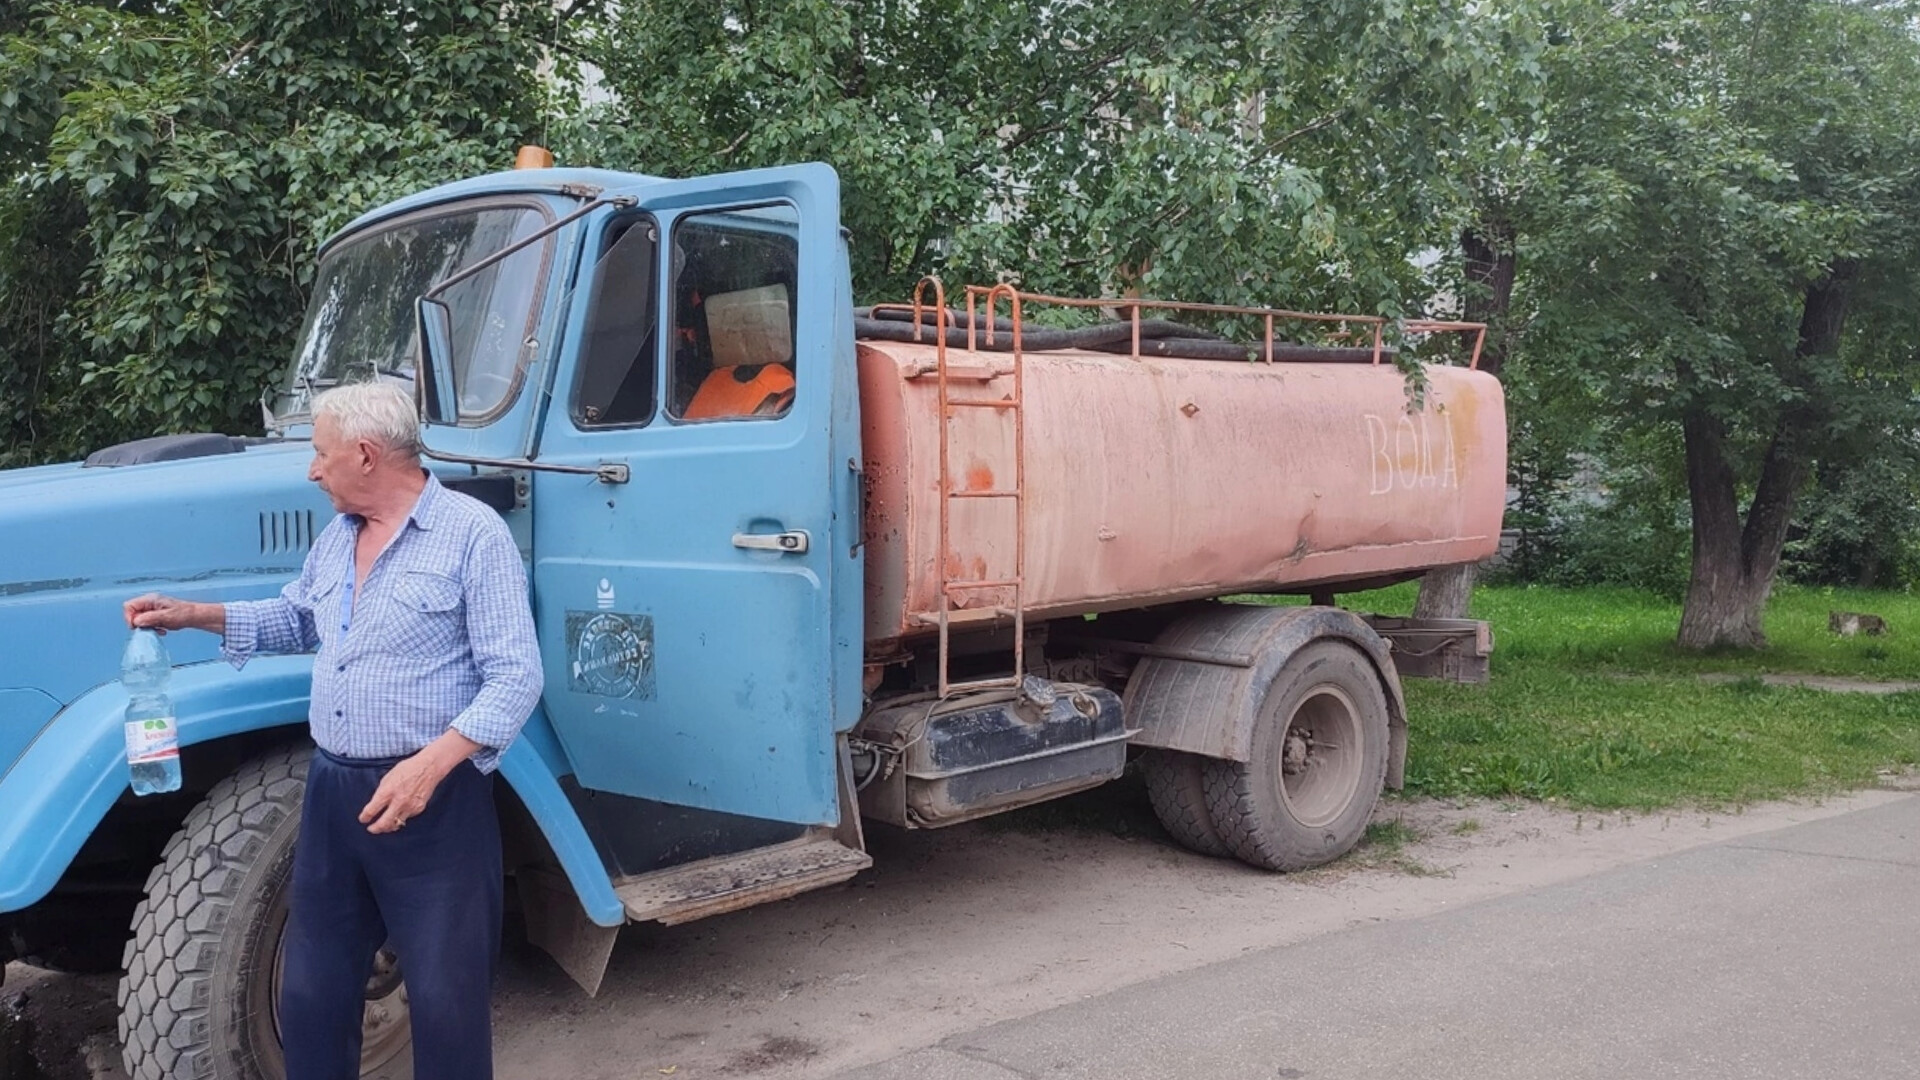 Где в Сыктывкаре организуют подвоз воды 10 июля